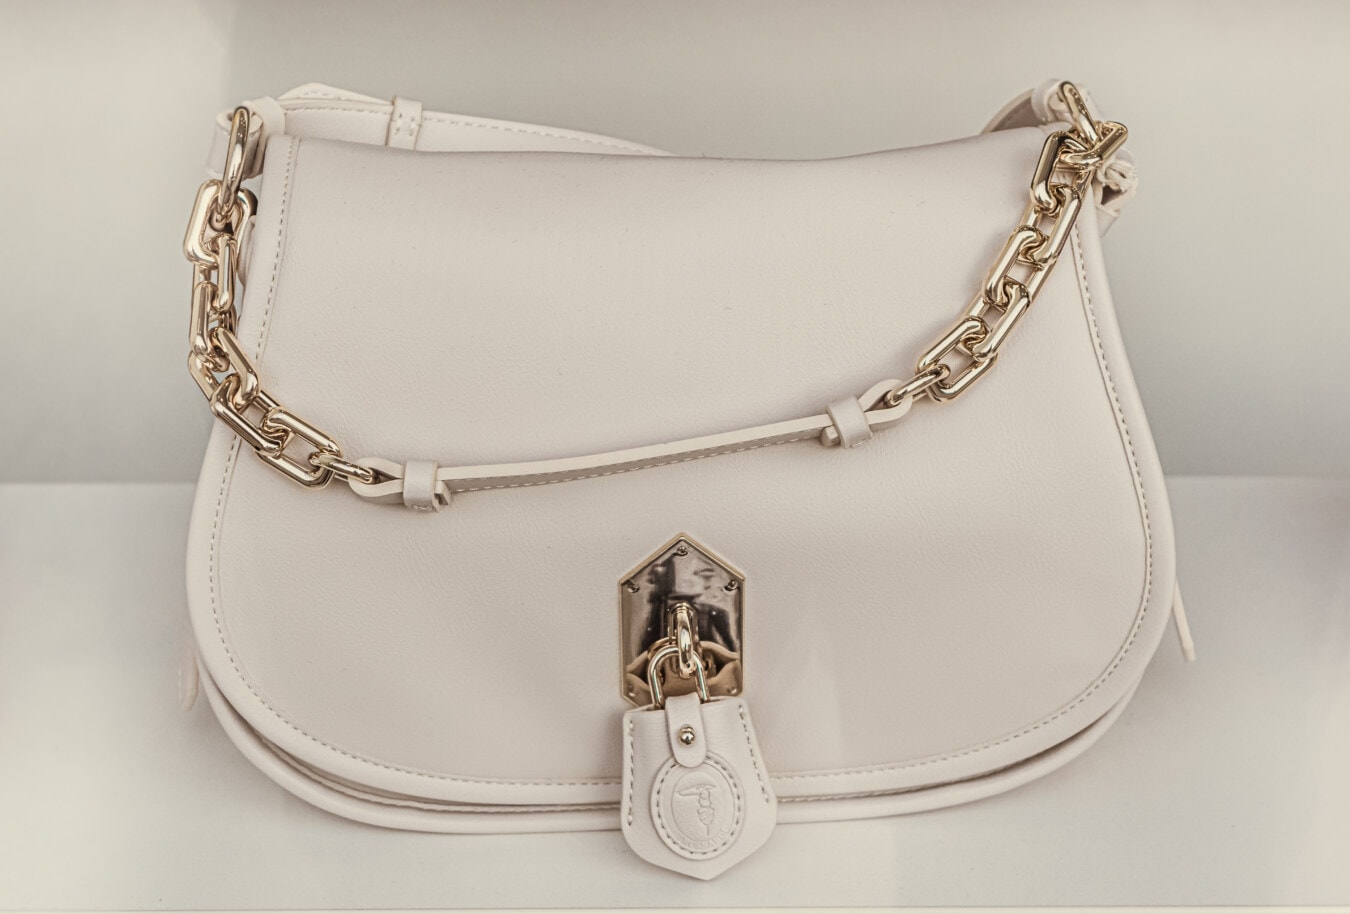 blanc, sac à main, en cuir, lueur dorée, chaîne, cadenas, coûteux, luxe, déguisement, mode